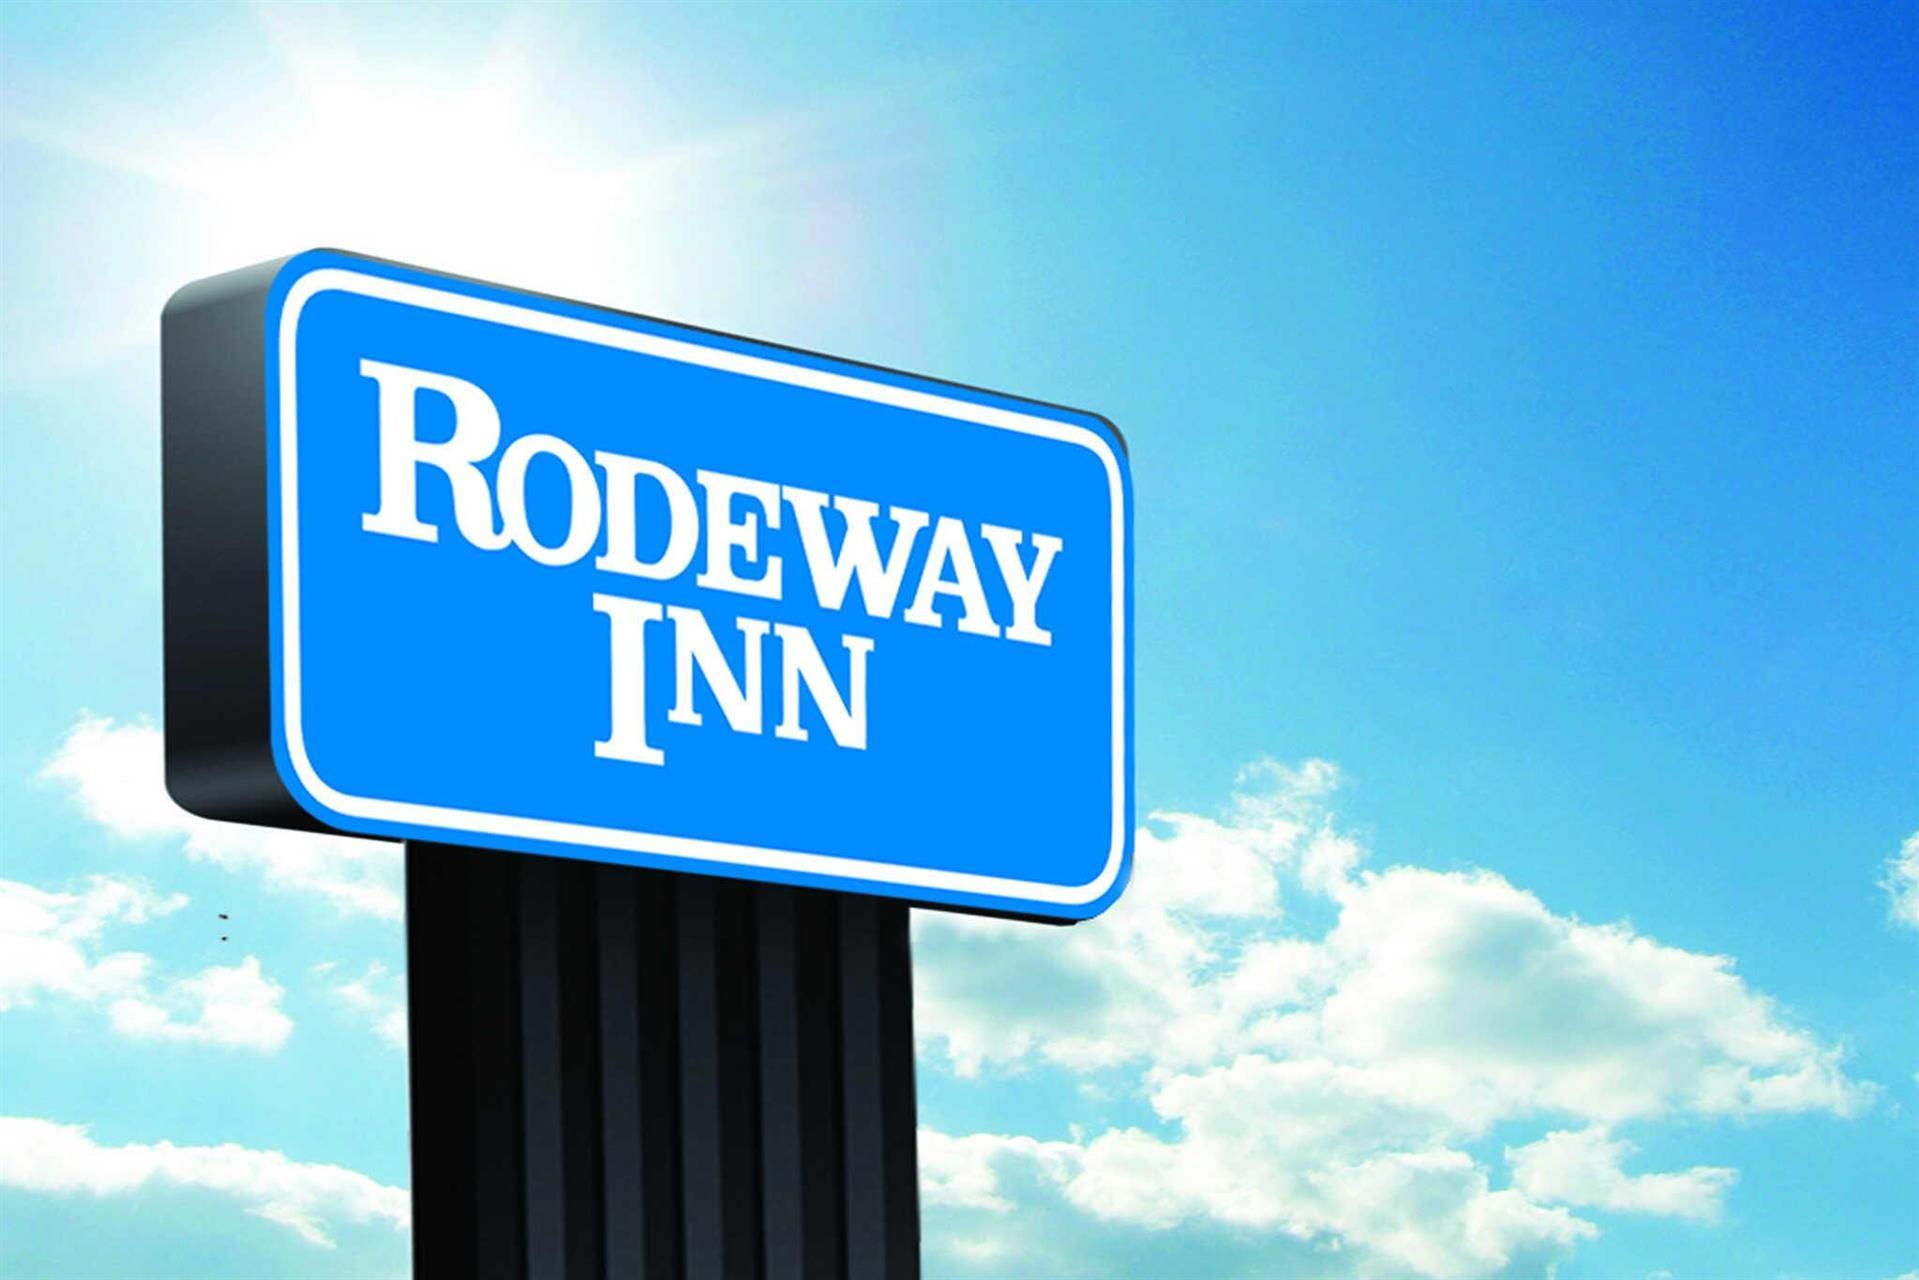 Rodeway Inn - Silver Springs in Silver Springs, FL